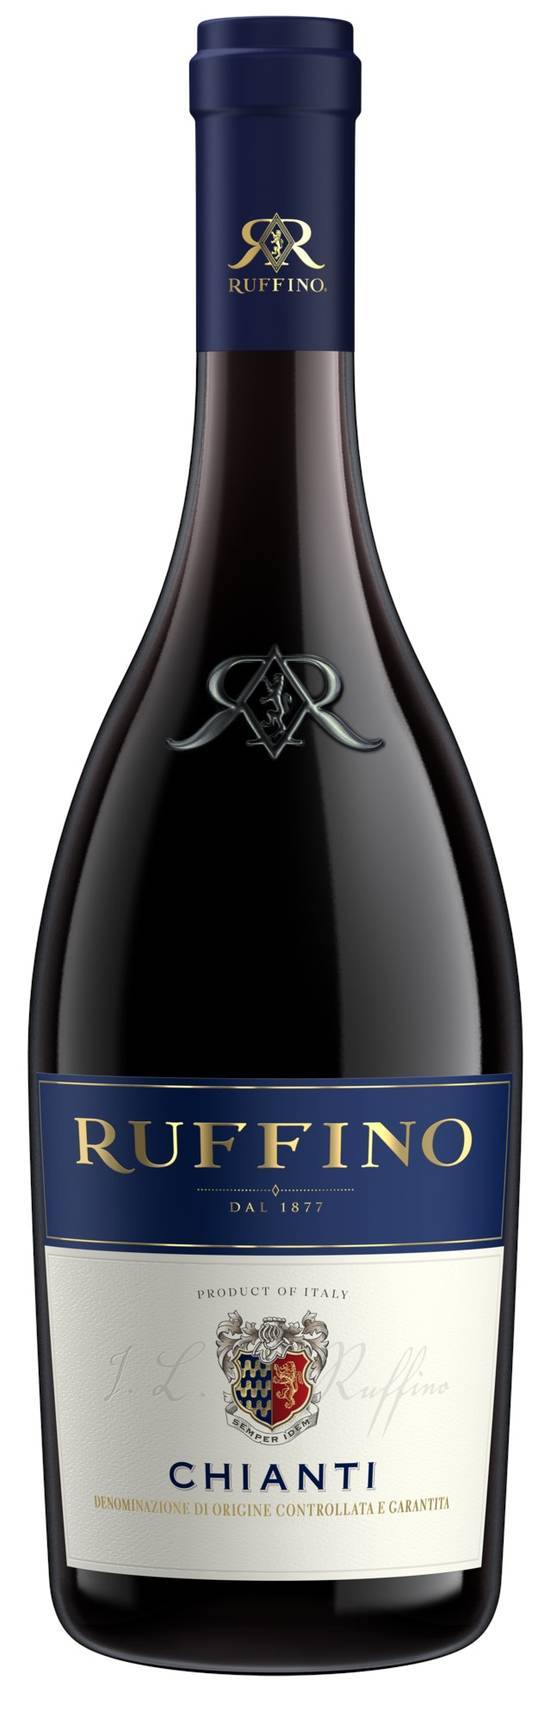 Ruffino Chianti Docg Sangiovese Italian Red Wine (750ml bottle)